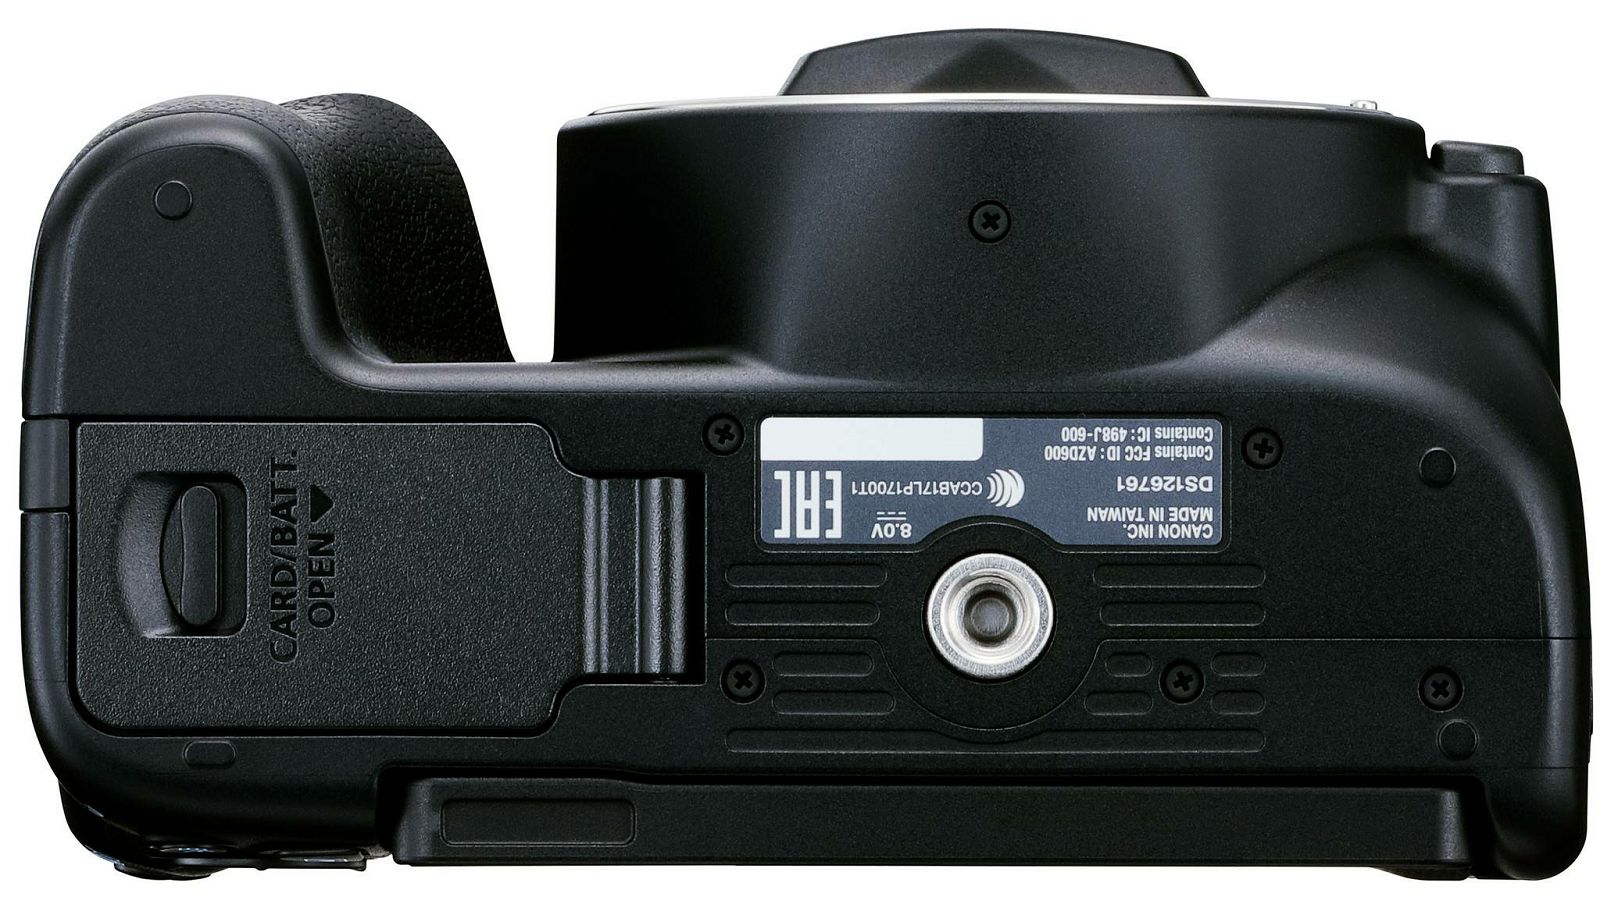 Canon EOS 250D + EF-S 18-55mm f/4-5.6 DC III Black (3454C009AA) - CASH BACK